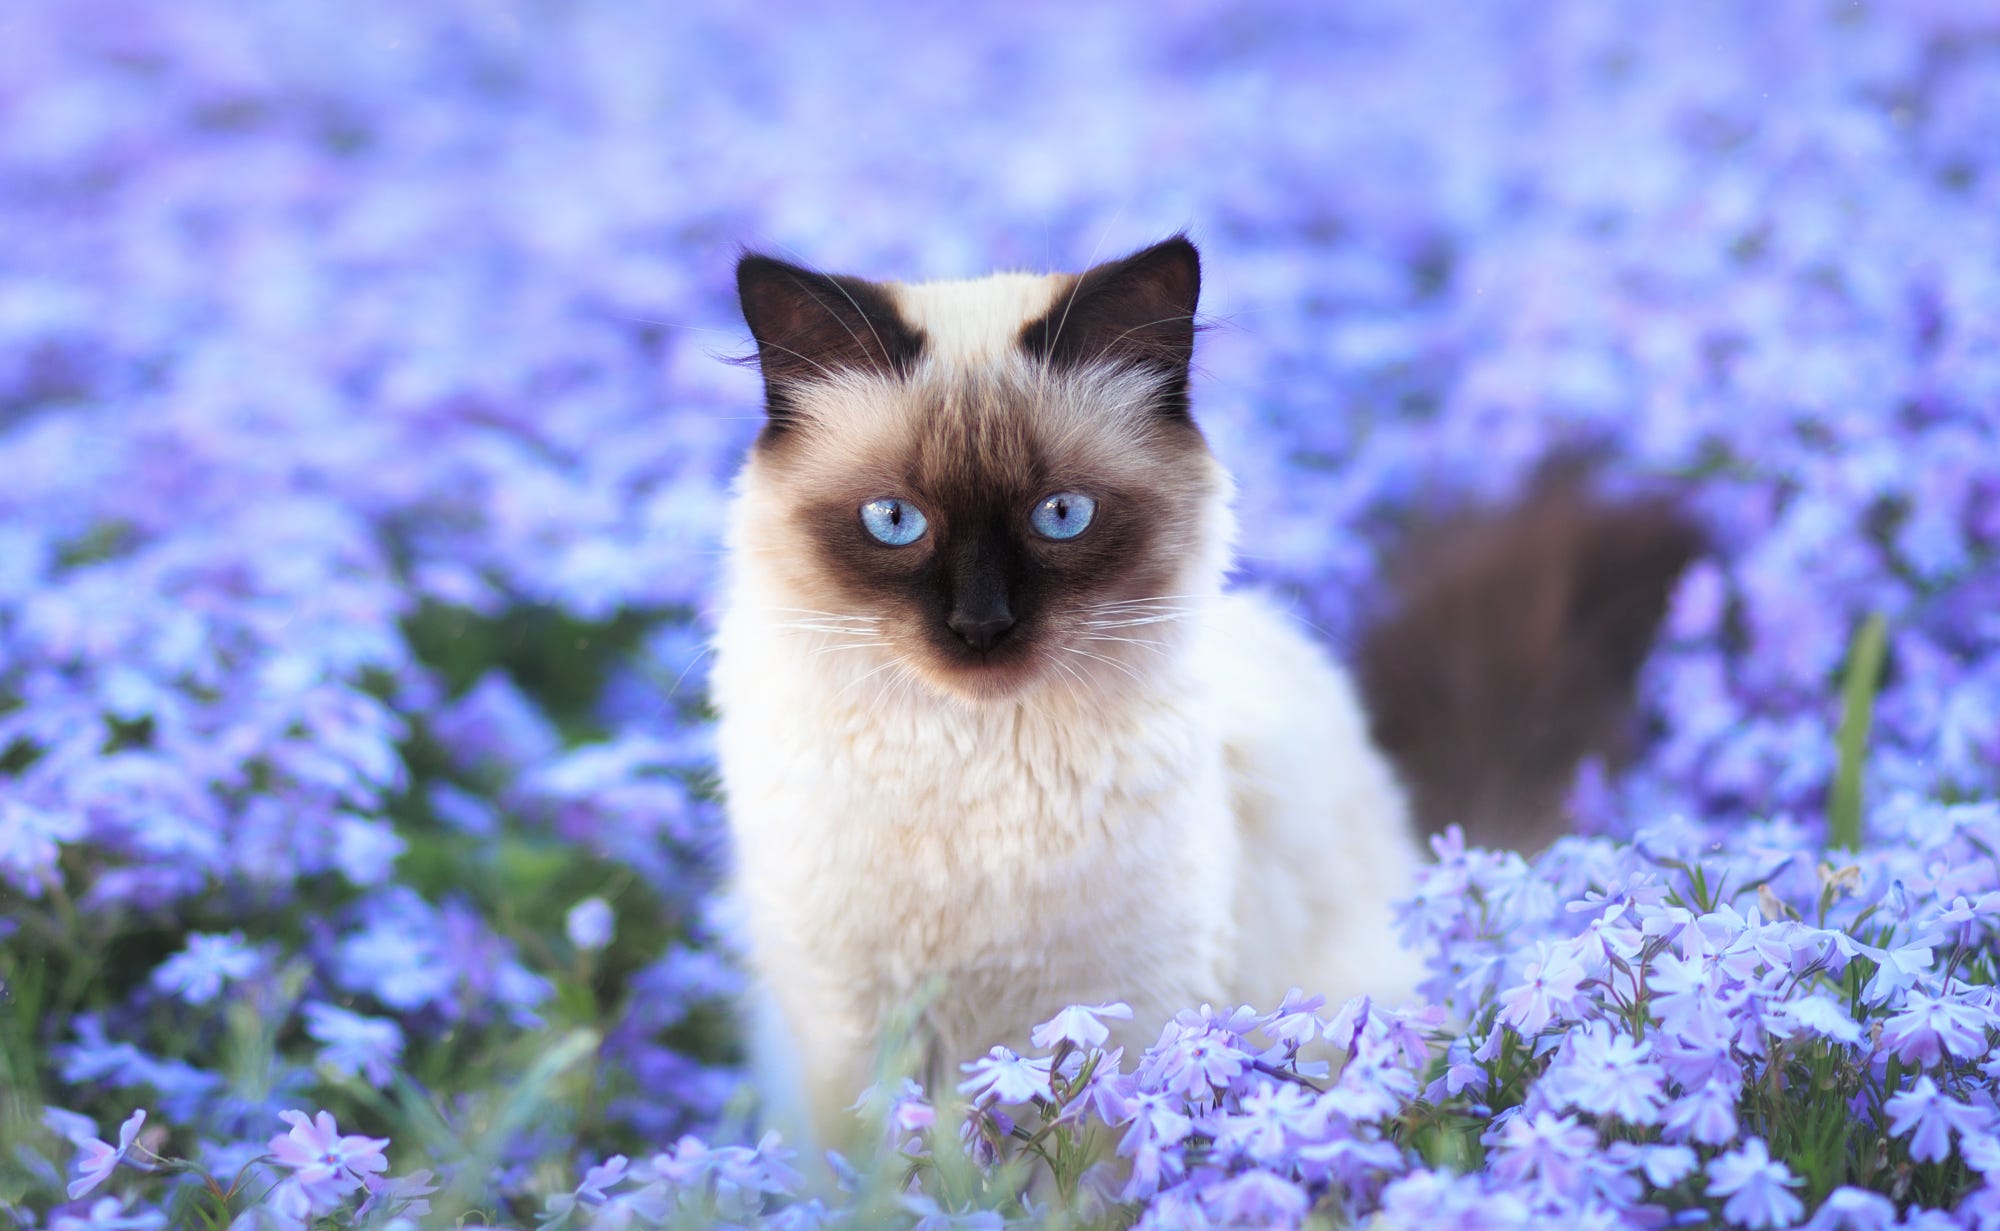  Siamese  Cat  in Flower Field HD  Wallpaper  Background 